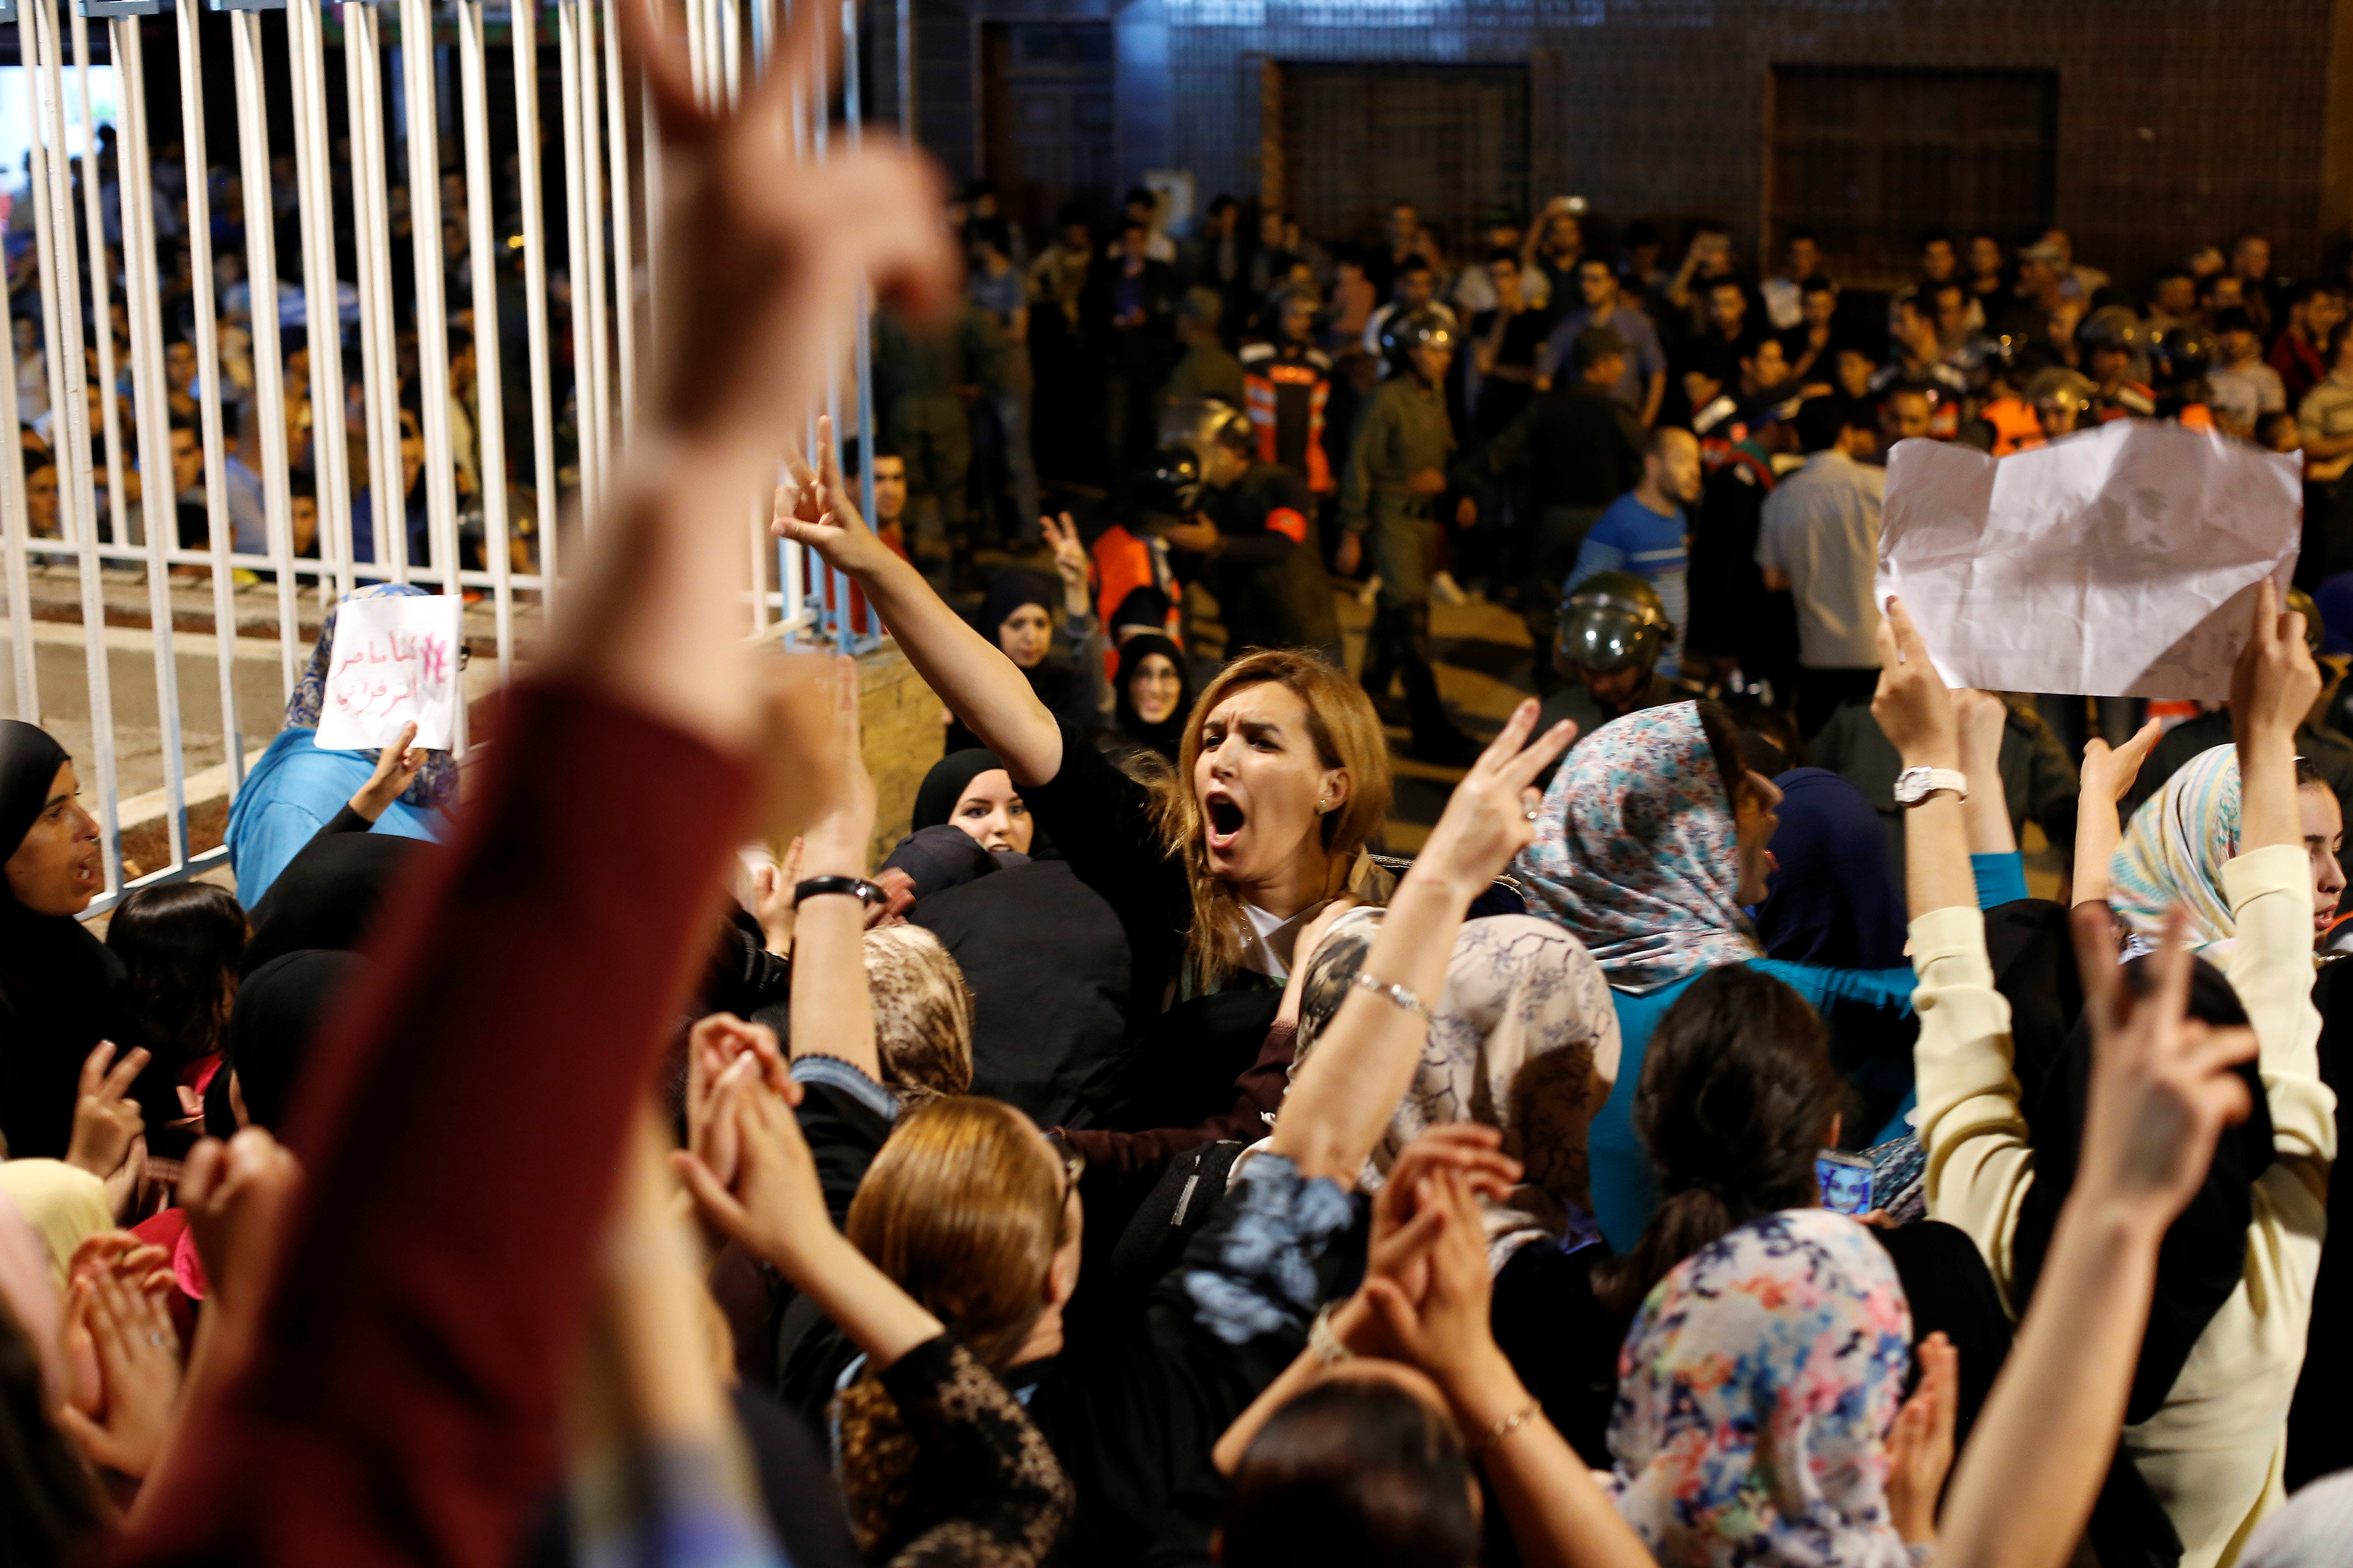 Moroccan police stifle women's protest in town of Al Hoceima